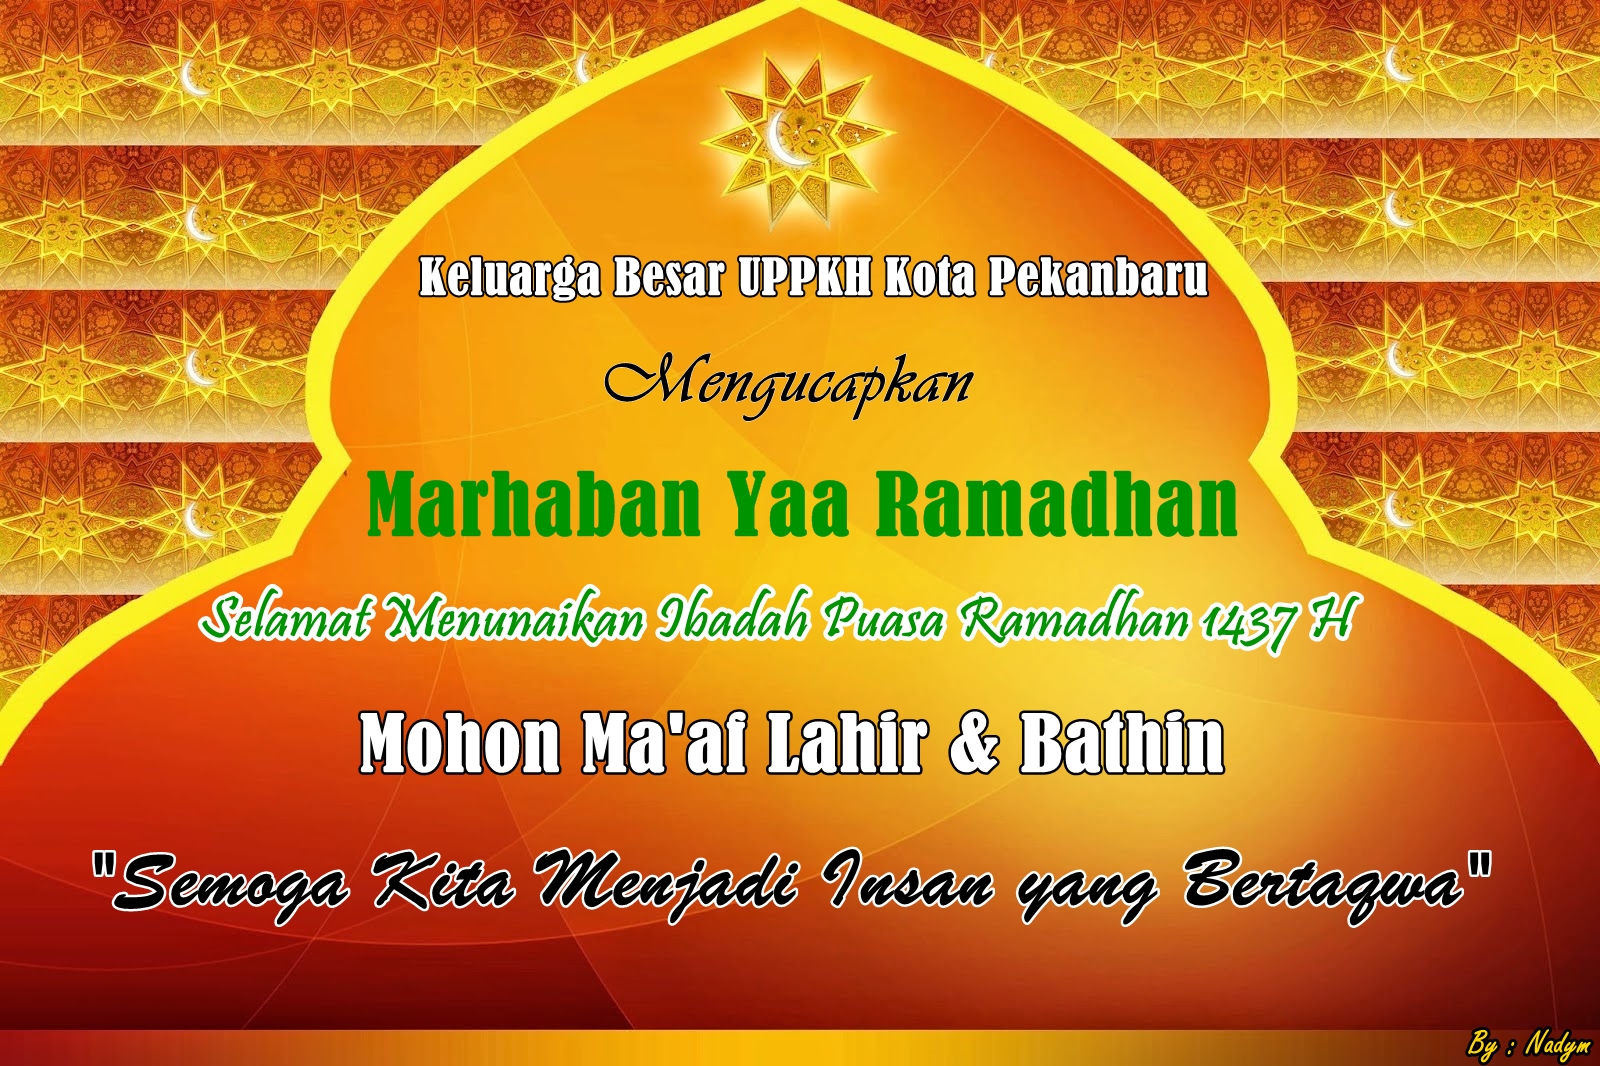 Marhaban Yaa Ramadhan Ppkh Kota Pekanbaru